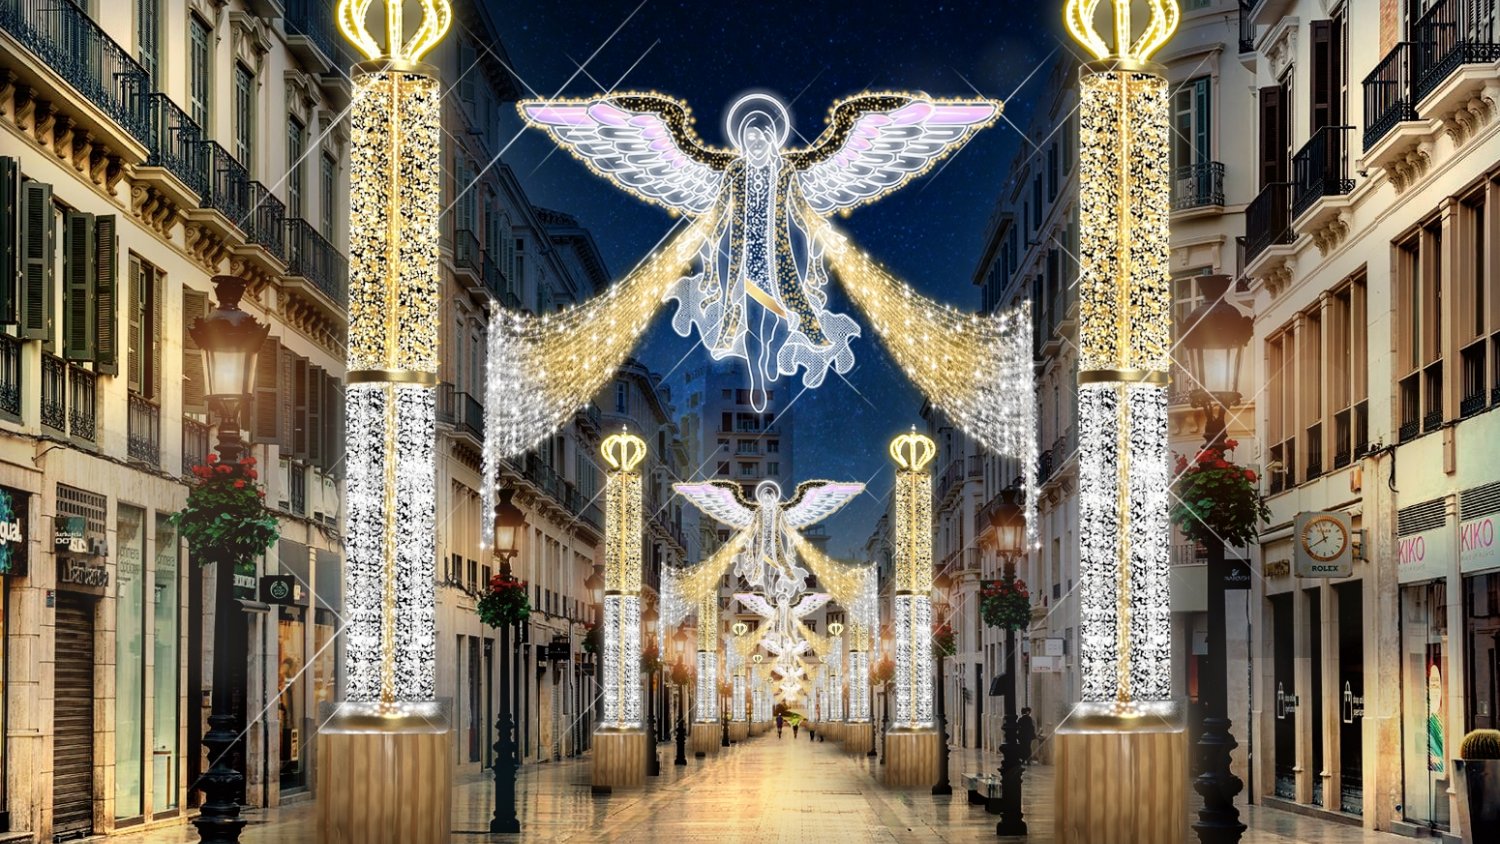 Un conjunto de '16 Ángeles celestiales' harán brillar la Calle Larios esta Navidad